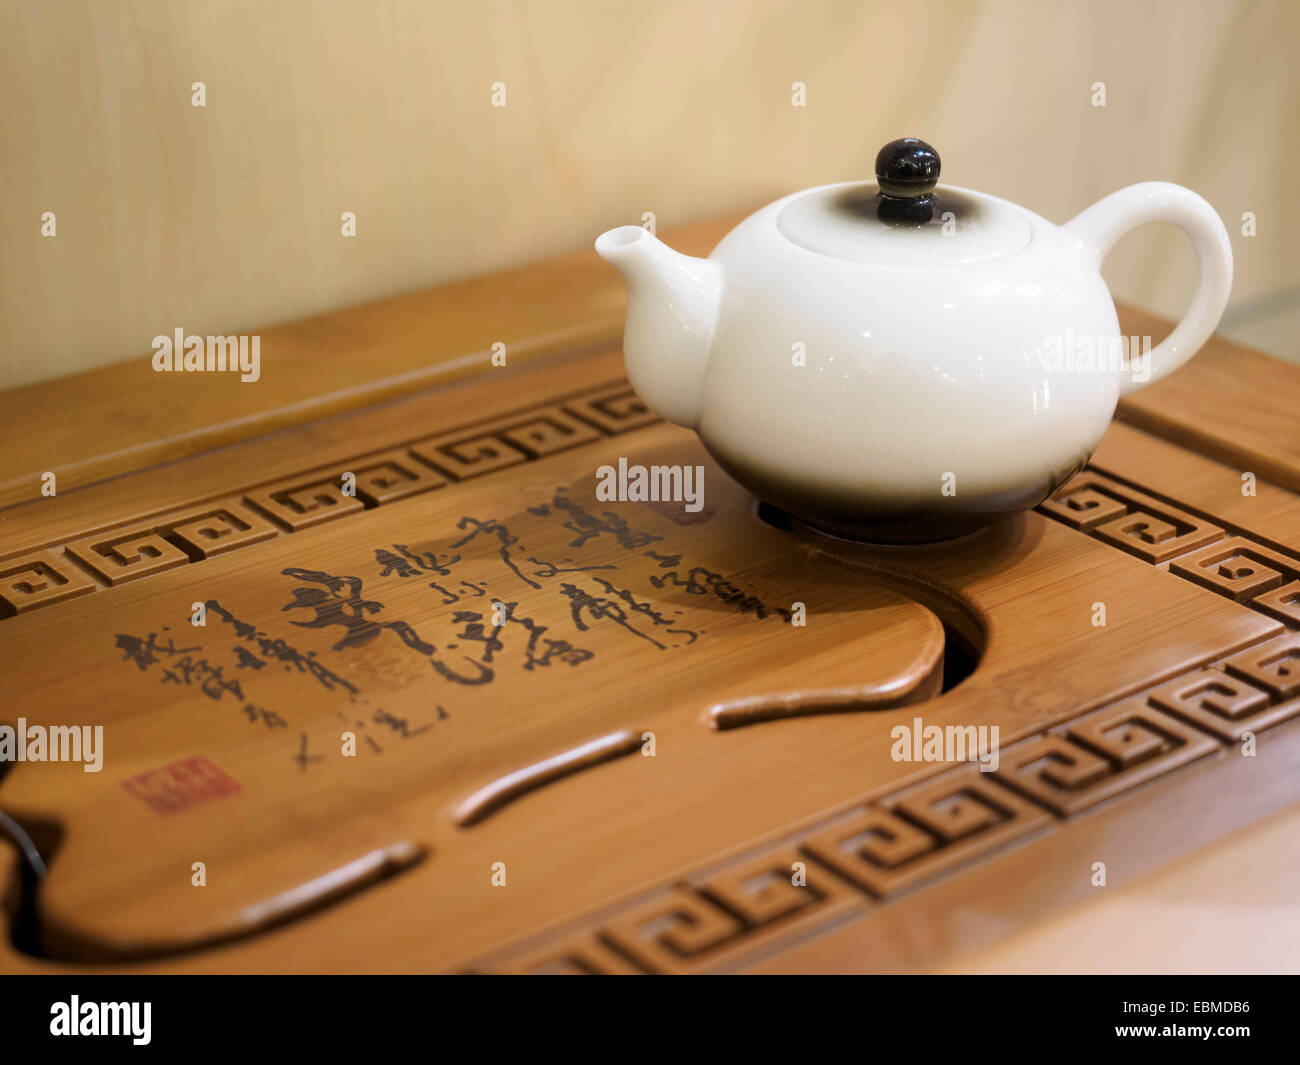 Bollitore cinese immagini e fotografie stock ad alta risoluzione - Alamy